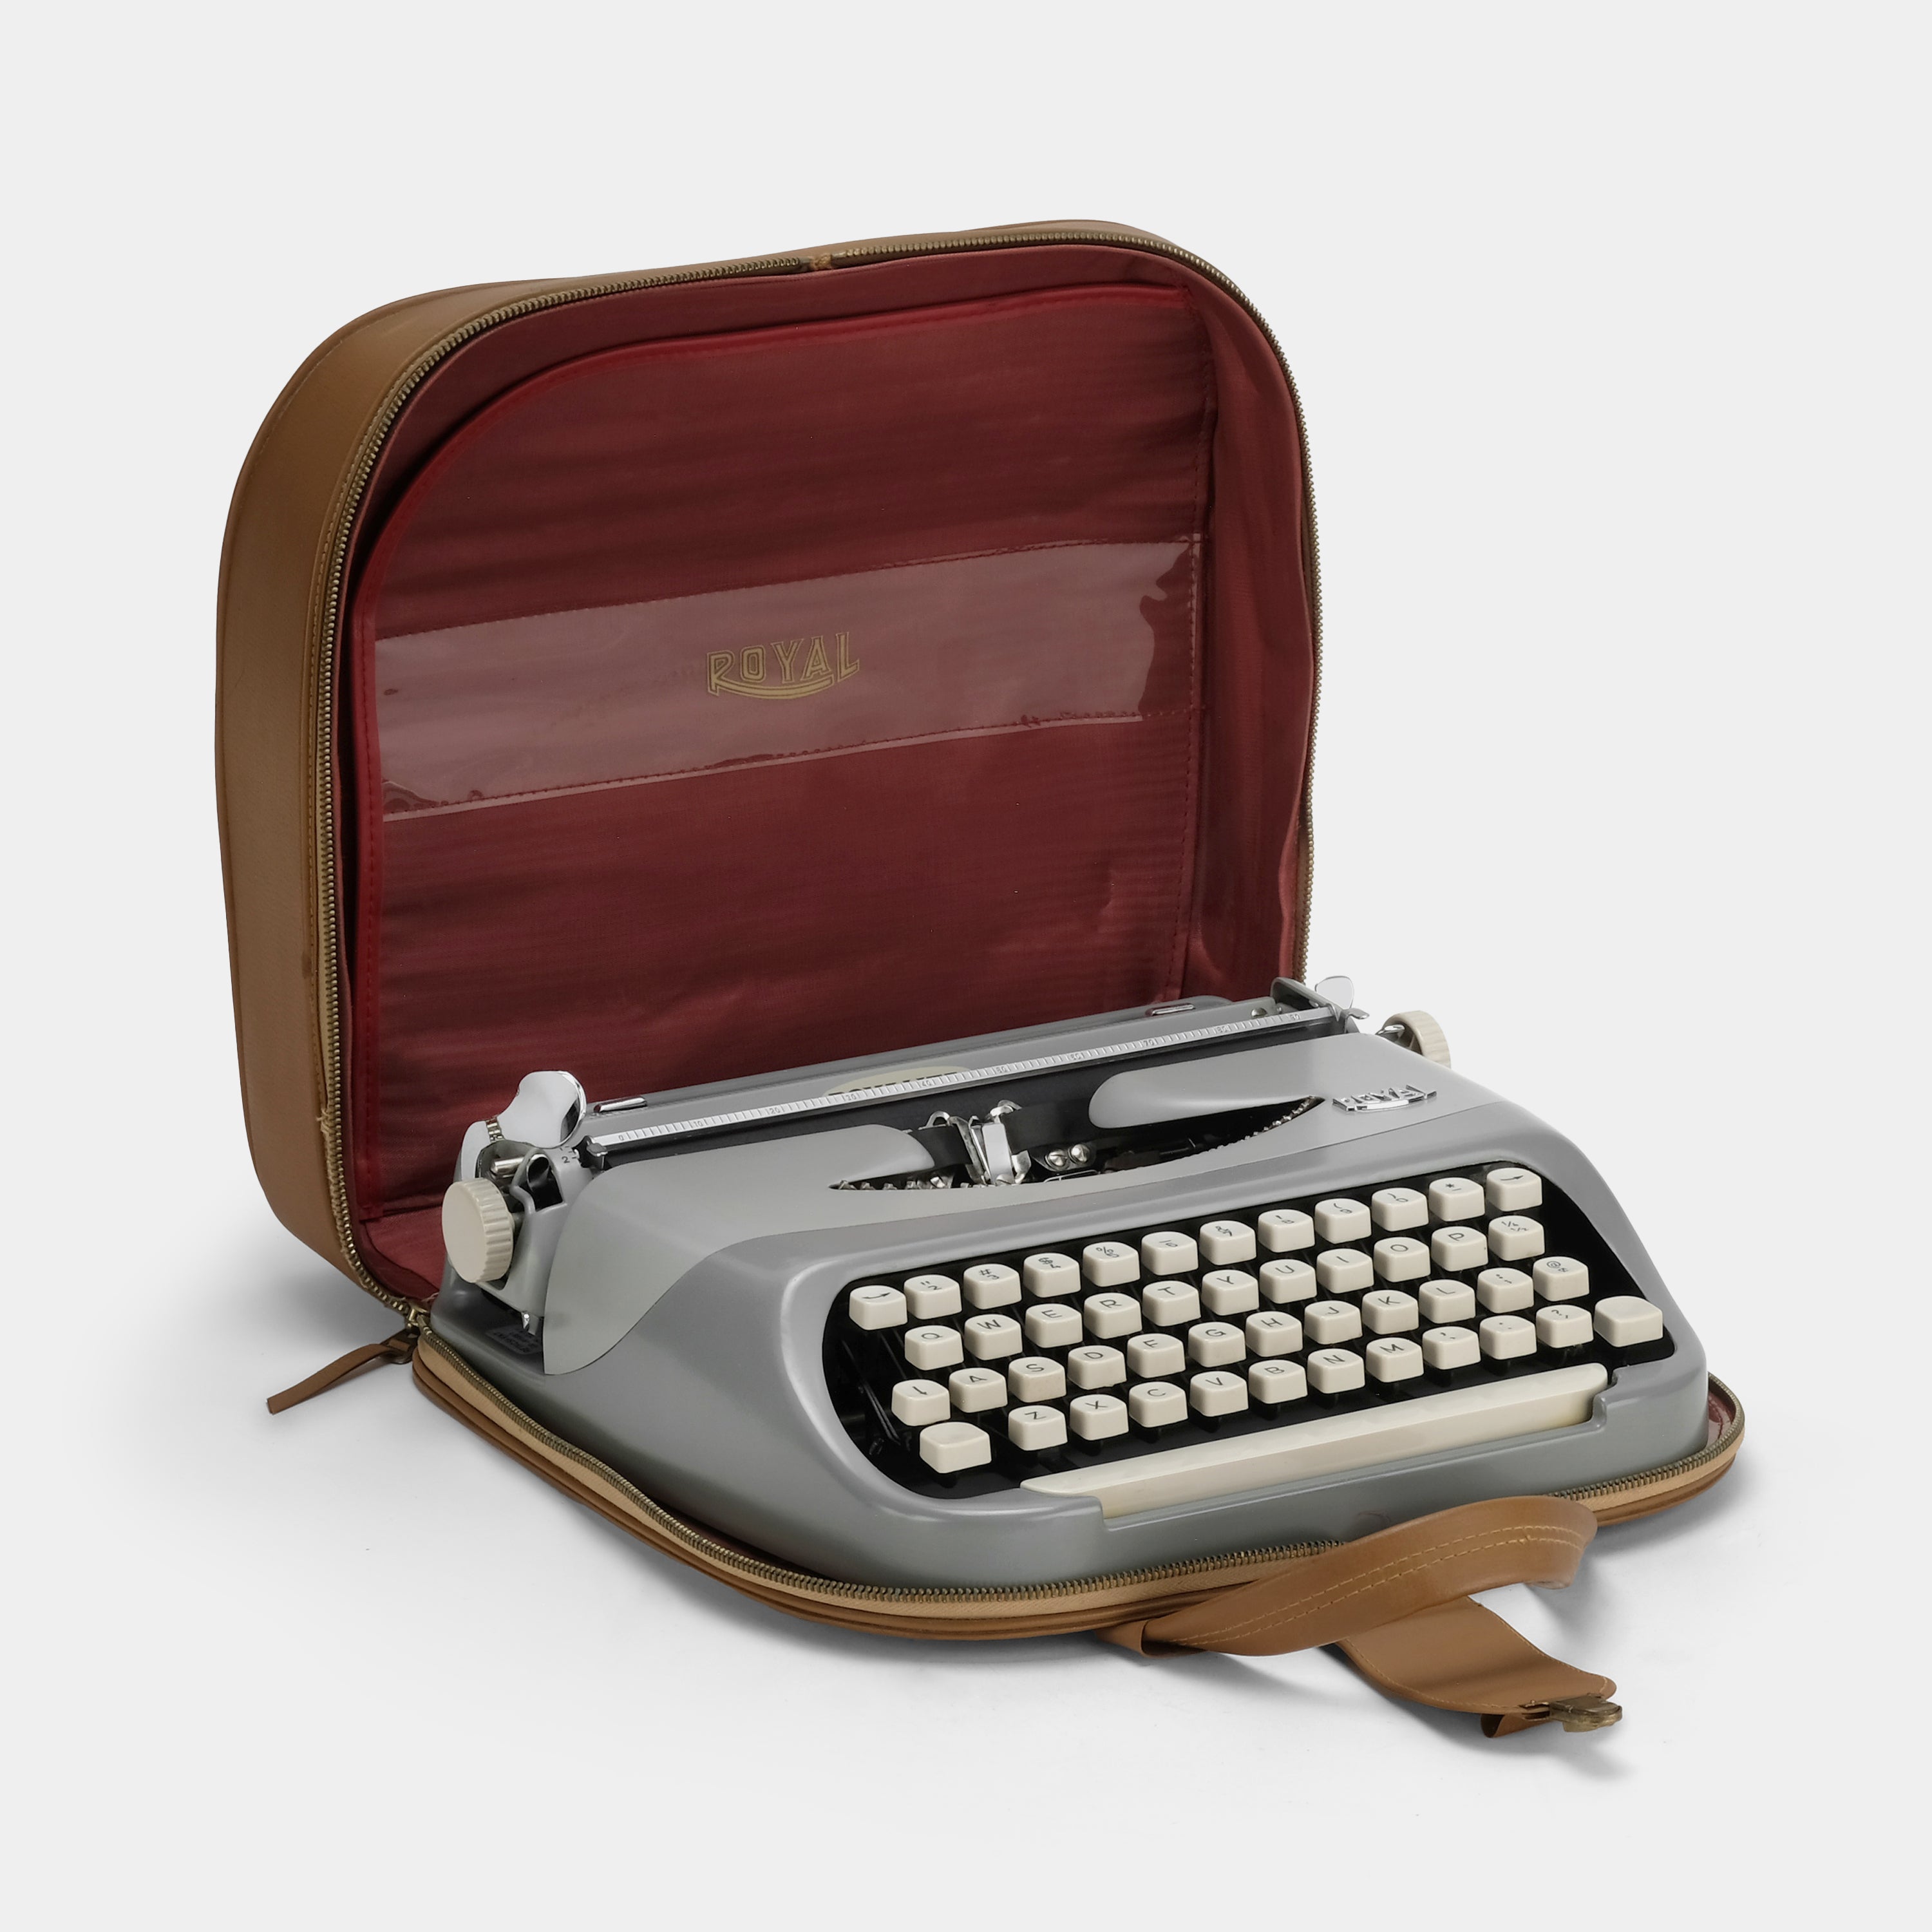 Royal Royalite Grey Manual Typewriter and Case